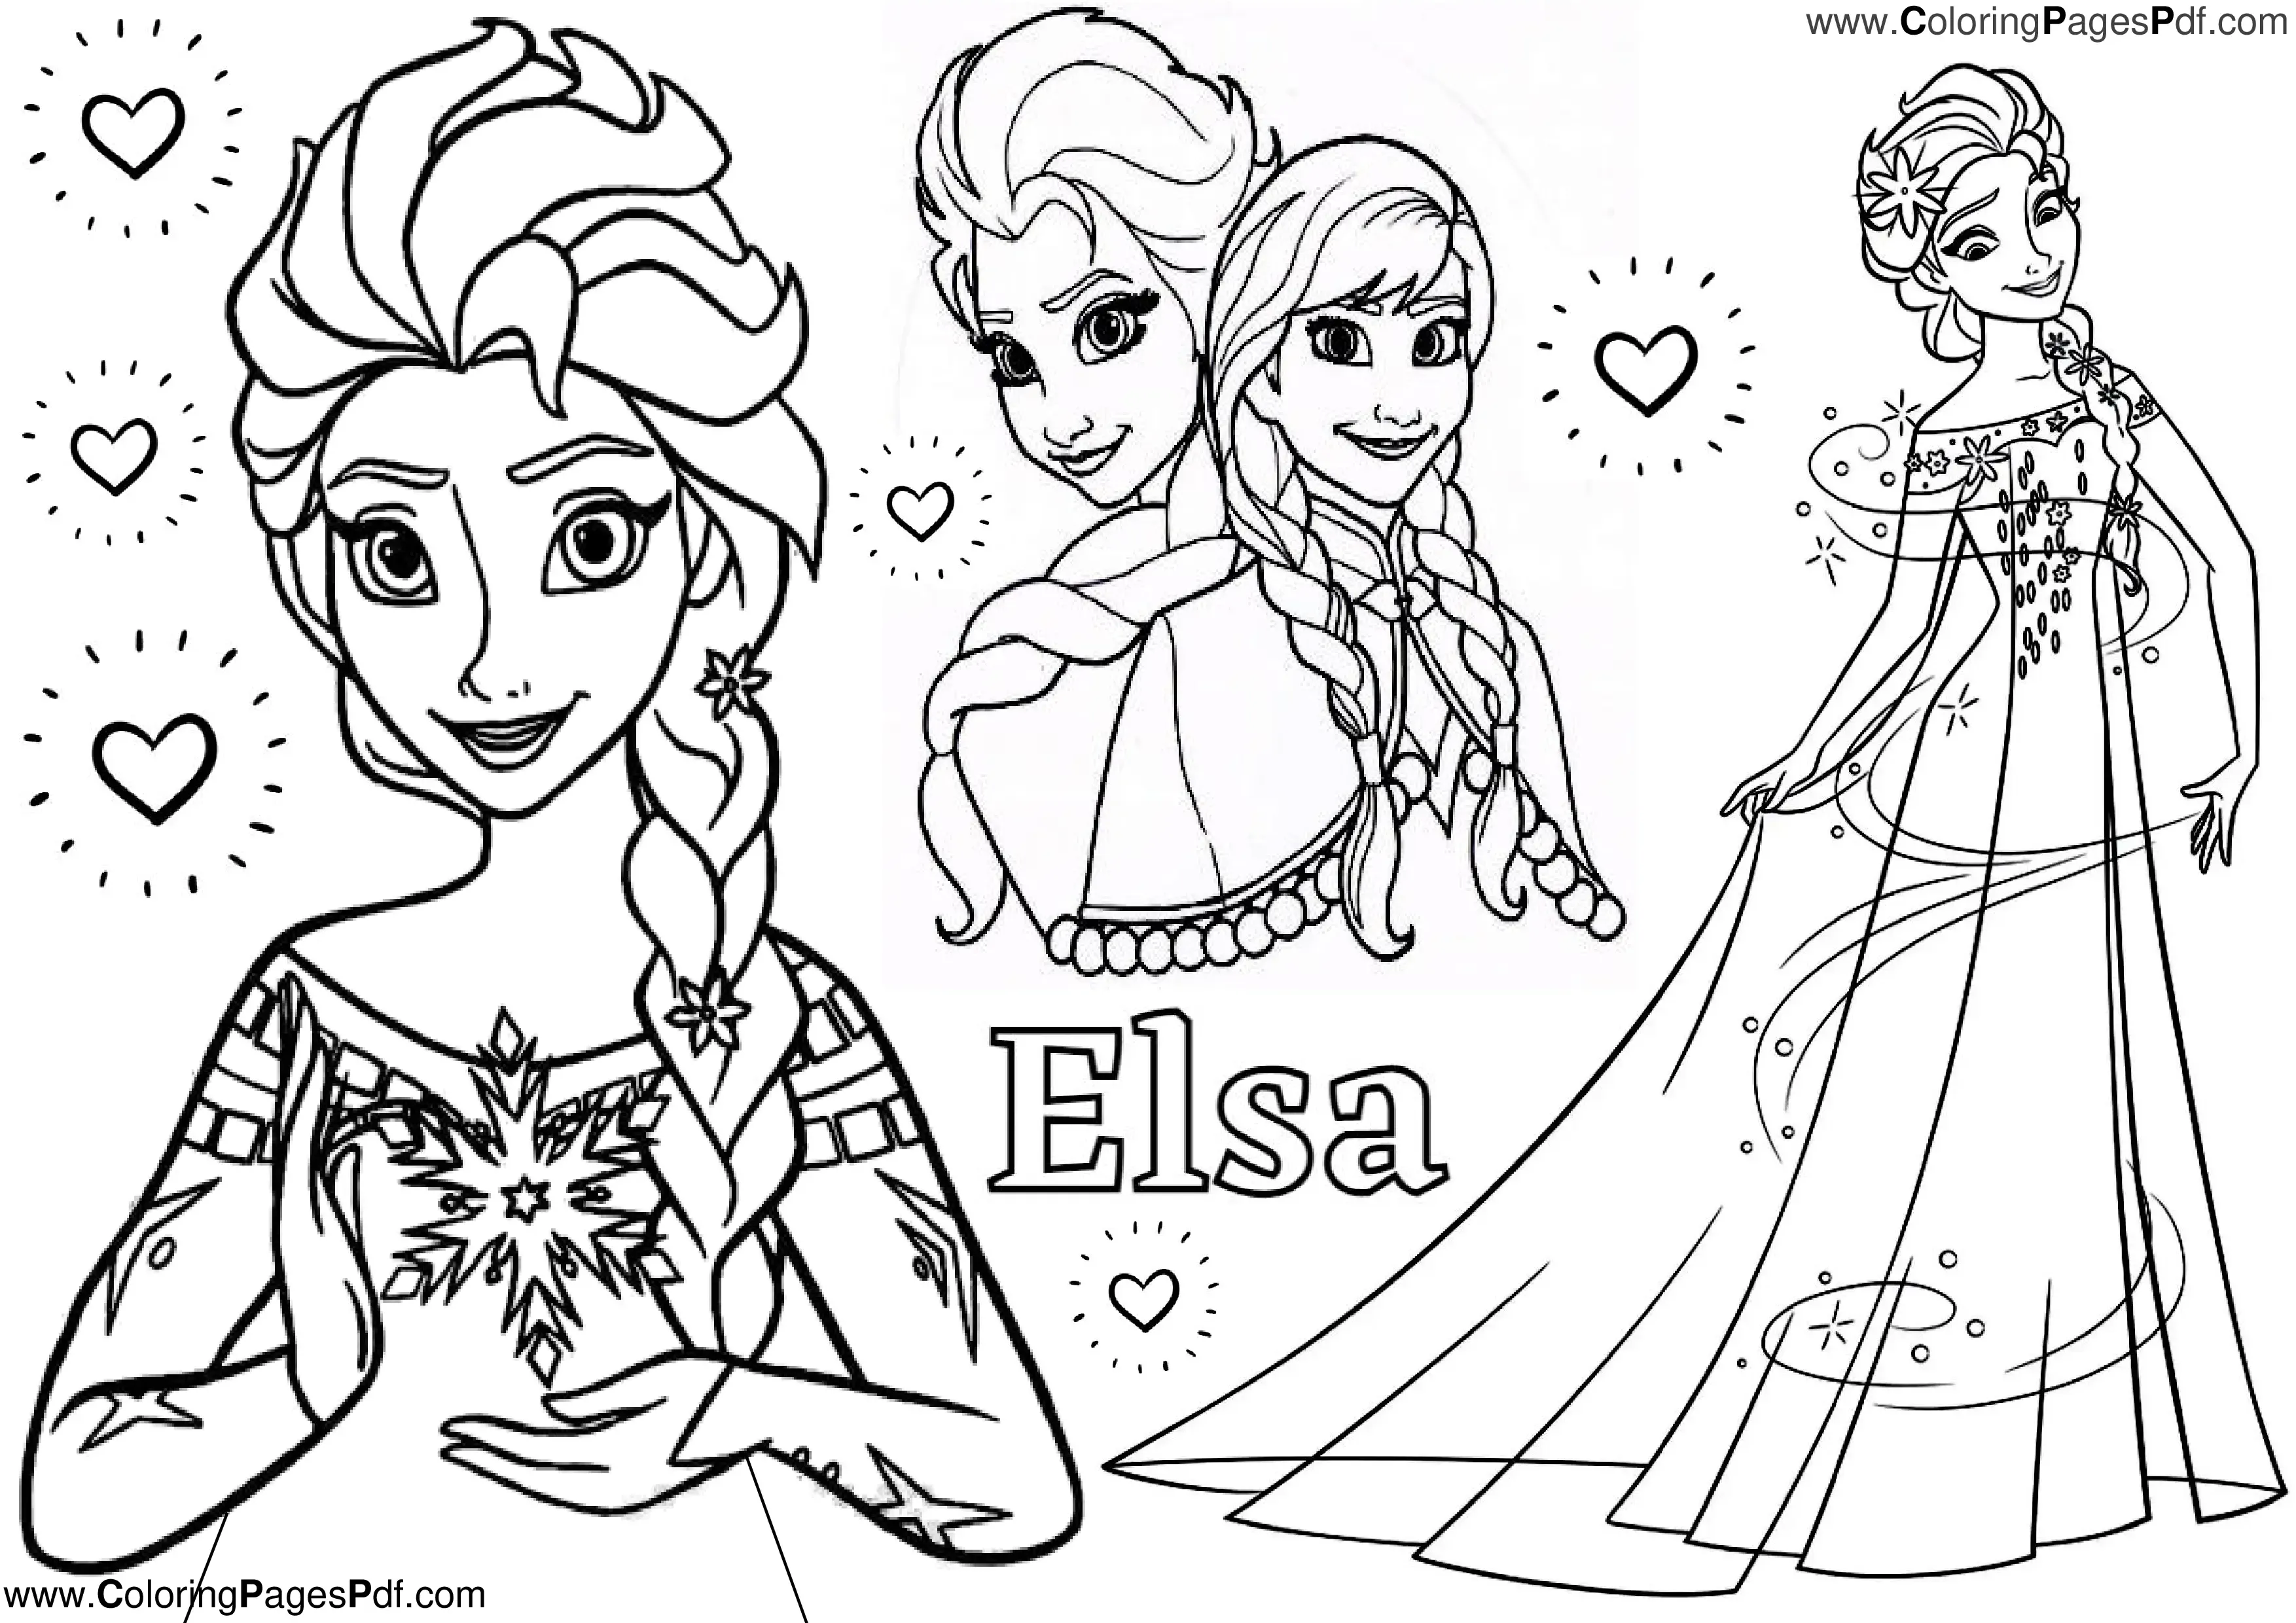 Elsa mermaid coloring pages